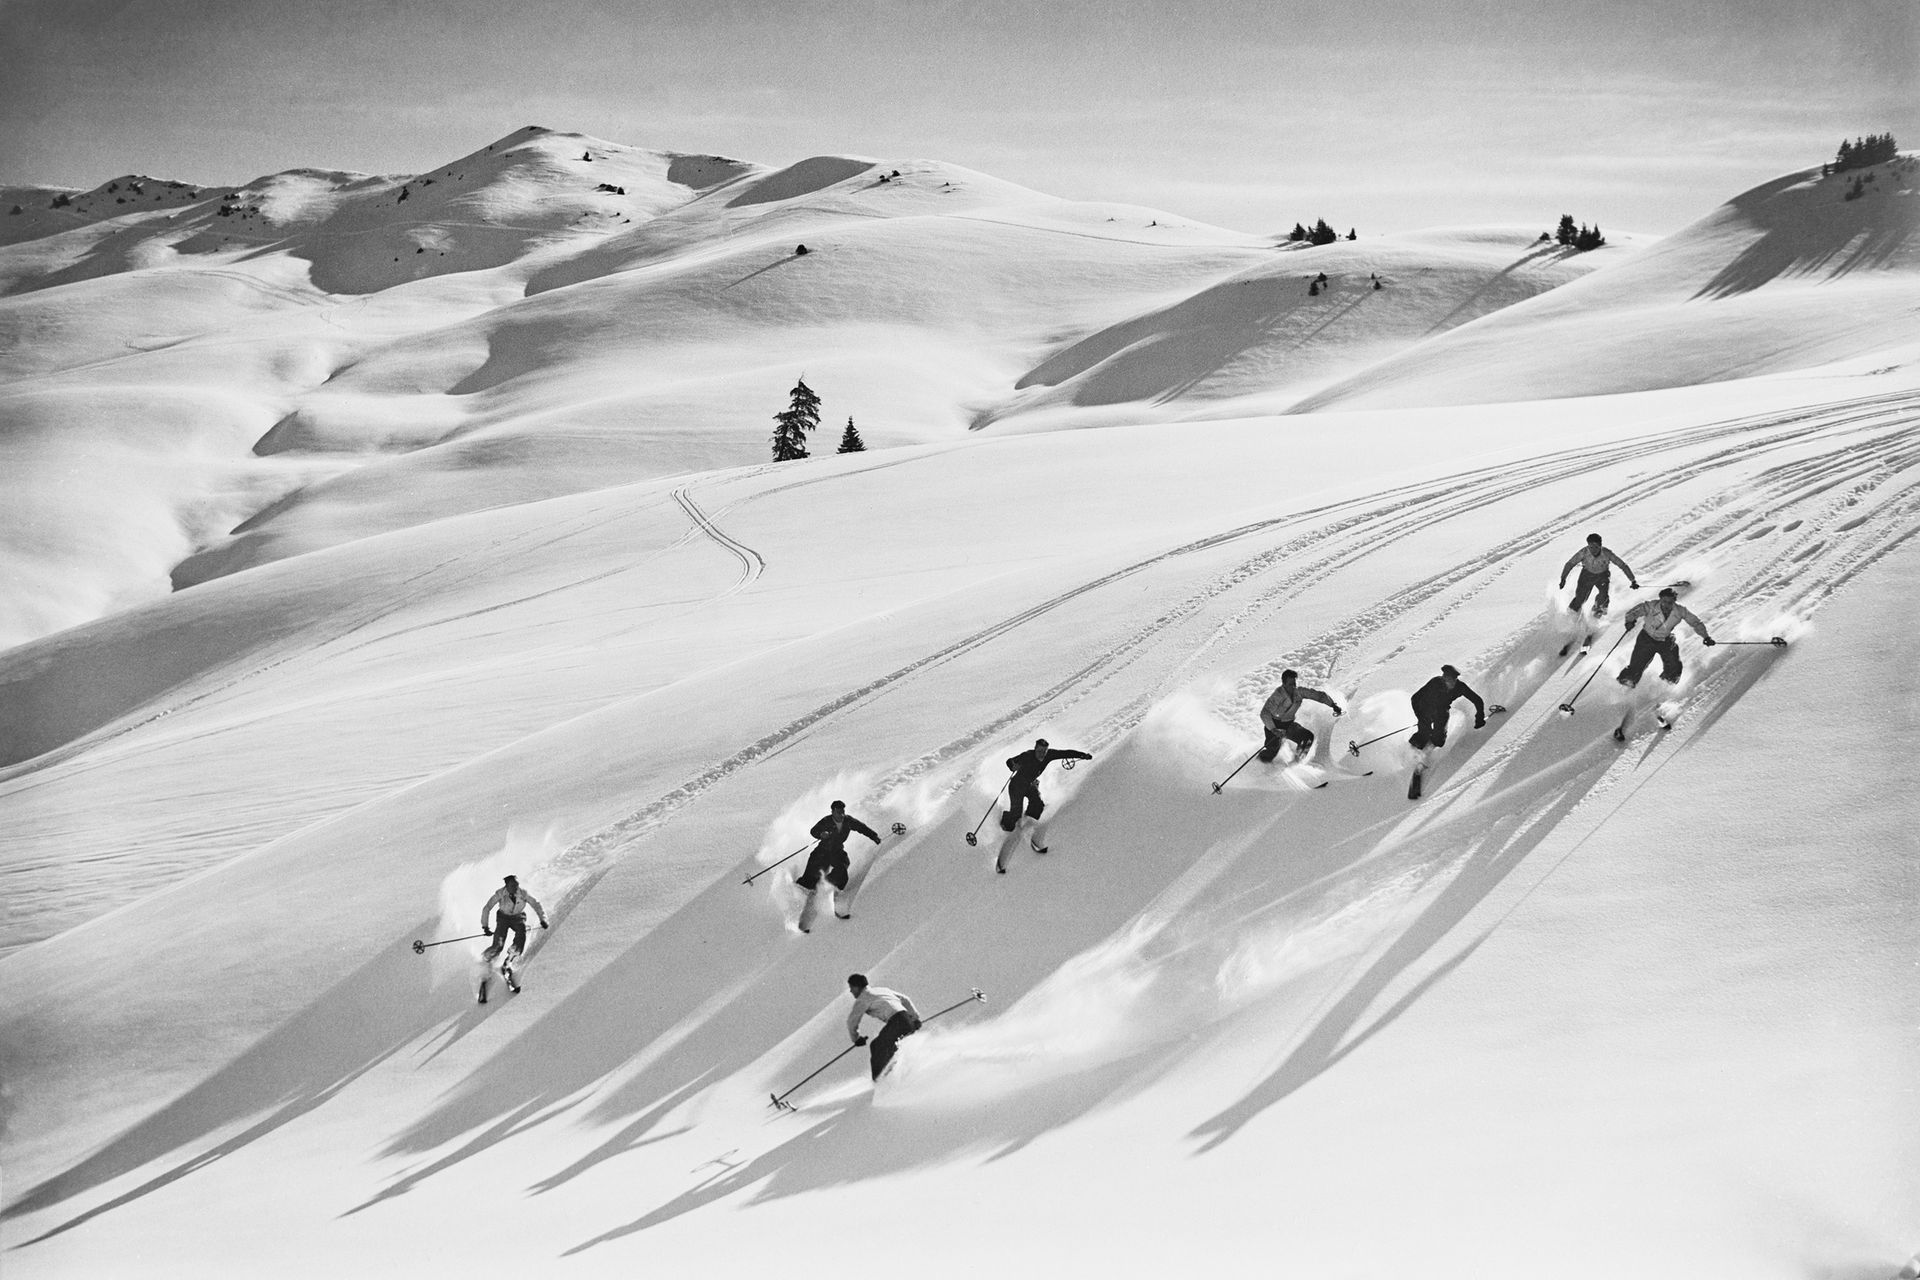 หิมะในภาพถ่ายที่ไม่ระบุวันที่ระหว่างปี 1914 และ 1950 (ภาพ: Jacques Naegeli Fund, Cabinet des estampes, BN)